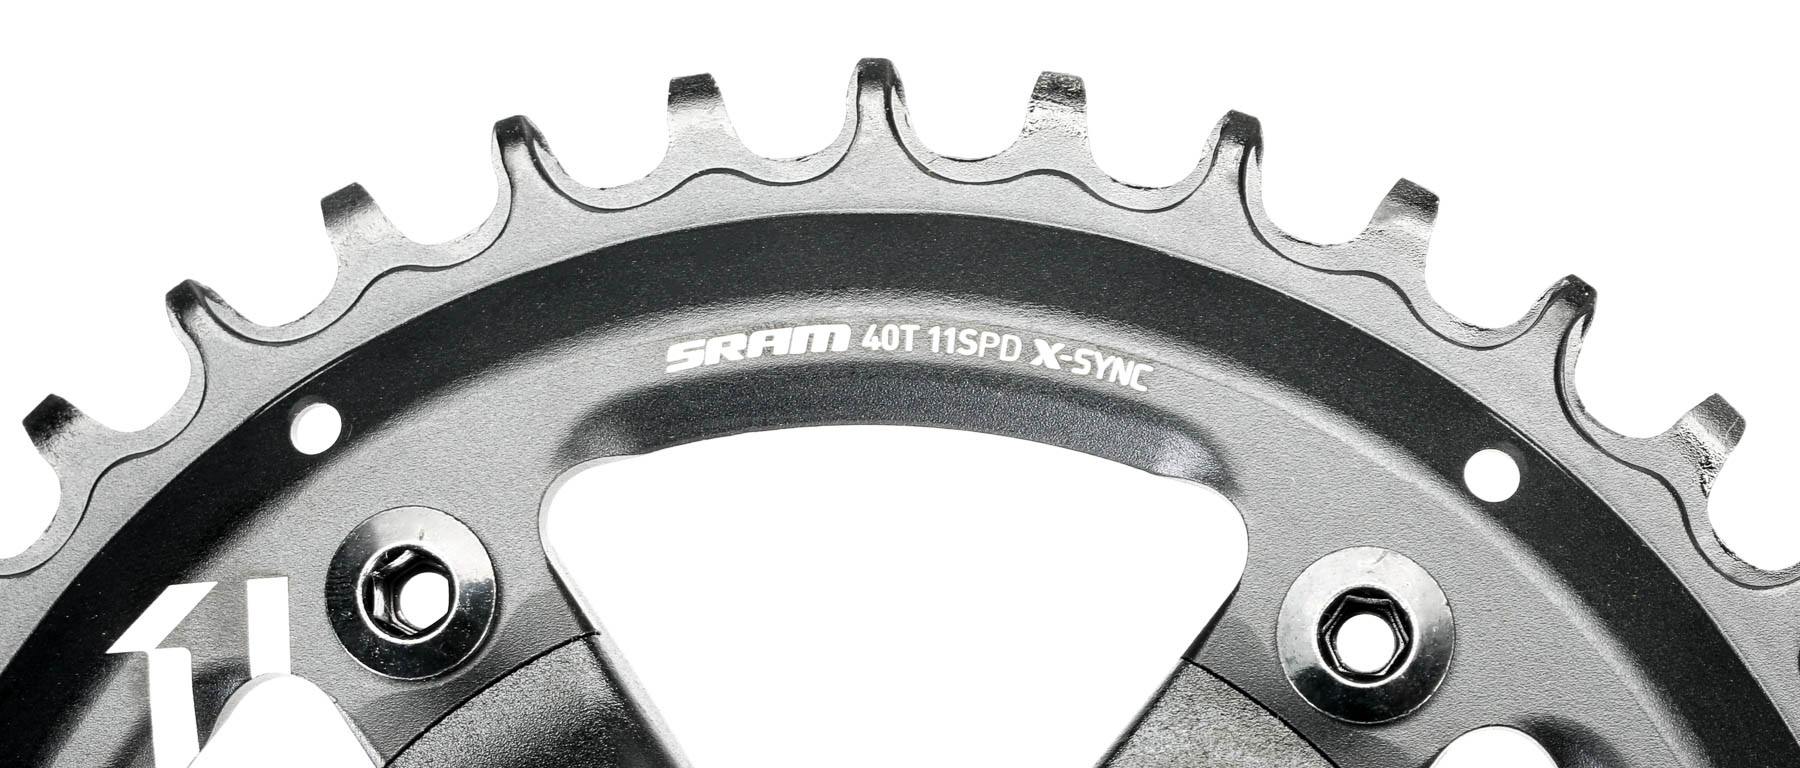 SRAM Apex 1 11-Speed Crankset